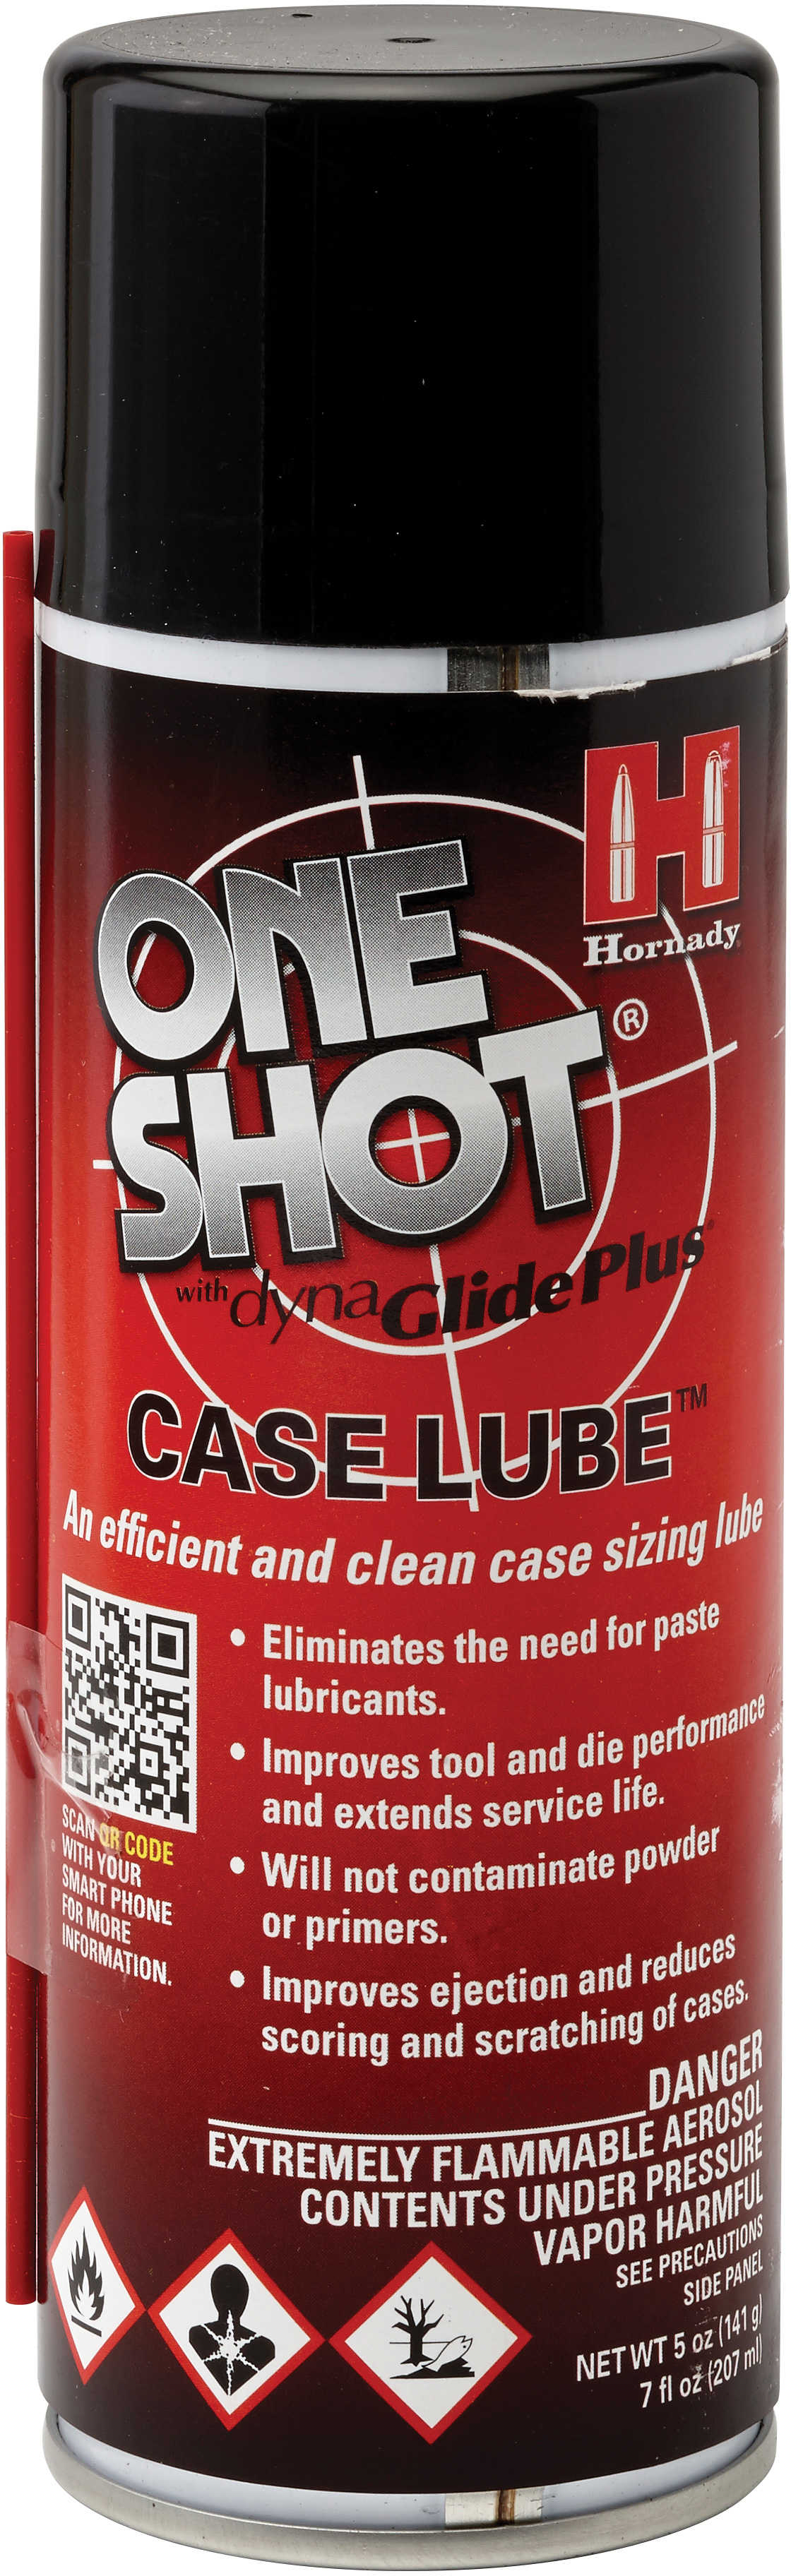 Hornady One Shot Spray Case Lube 10 Oz w/Dyna Glide Plus Md: 99913